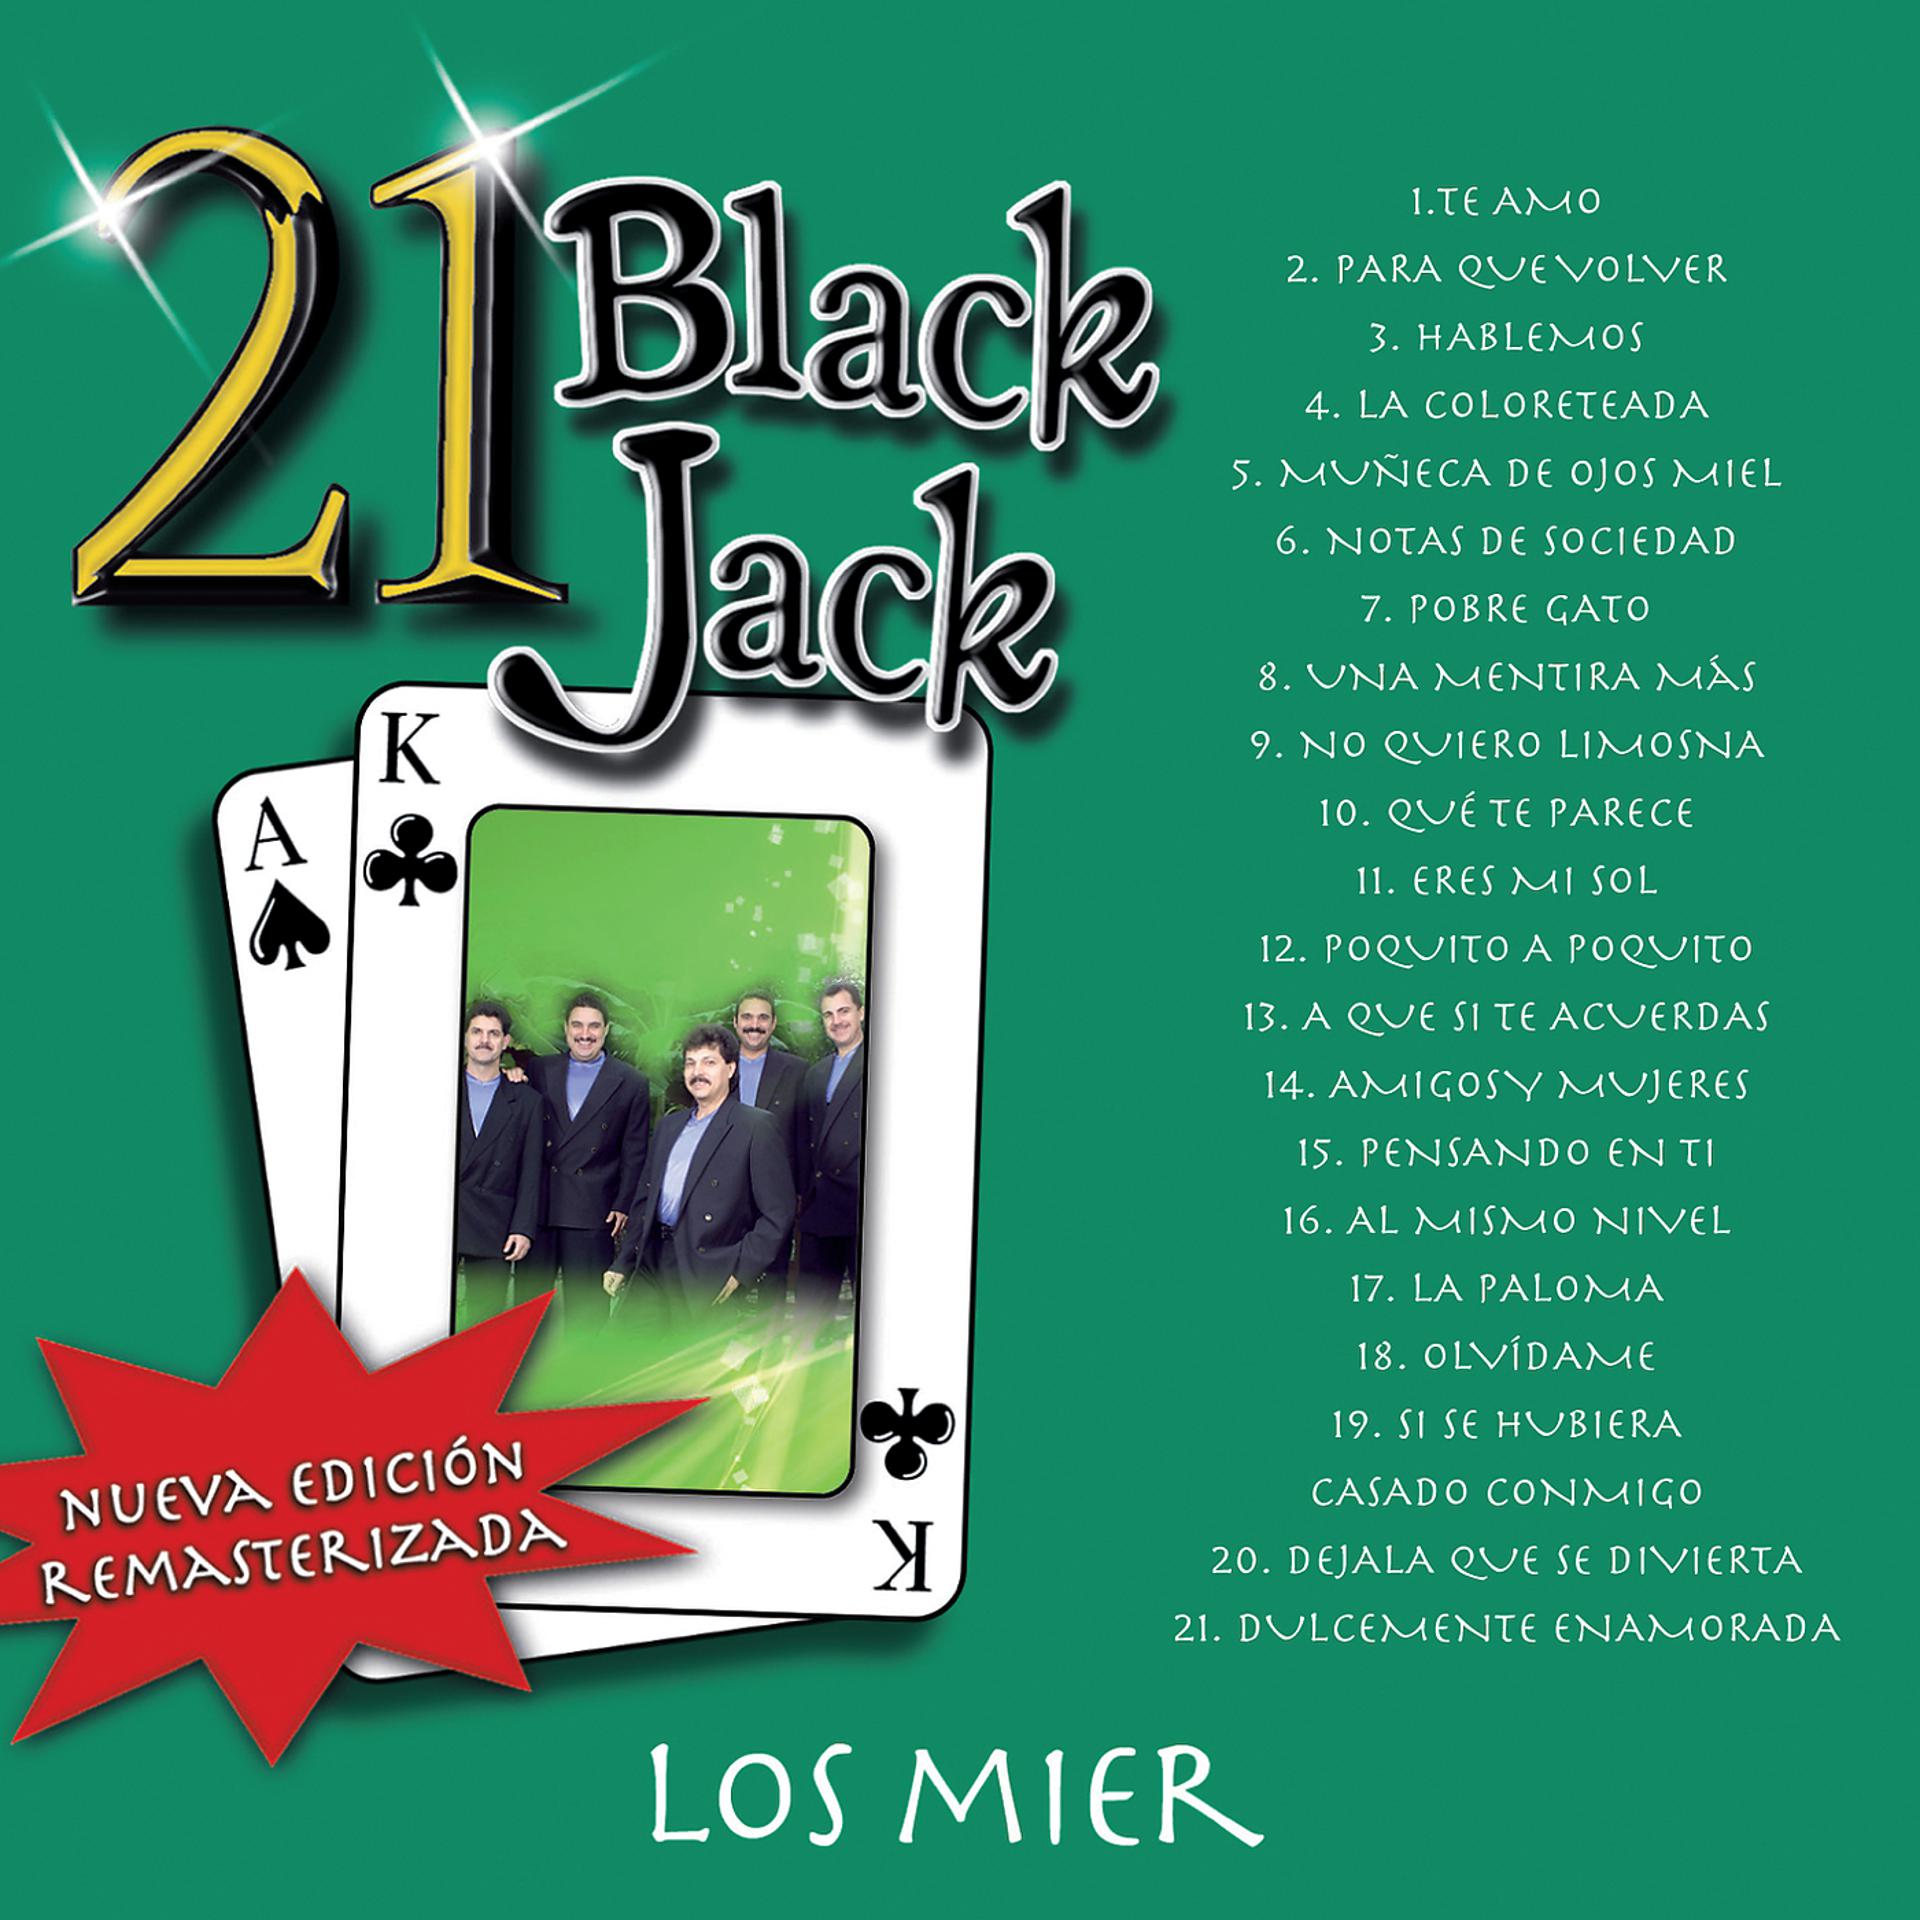 Постер альбома 21 Black Jack